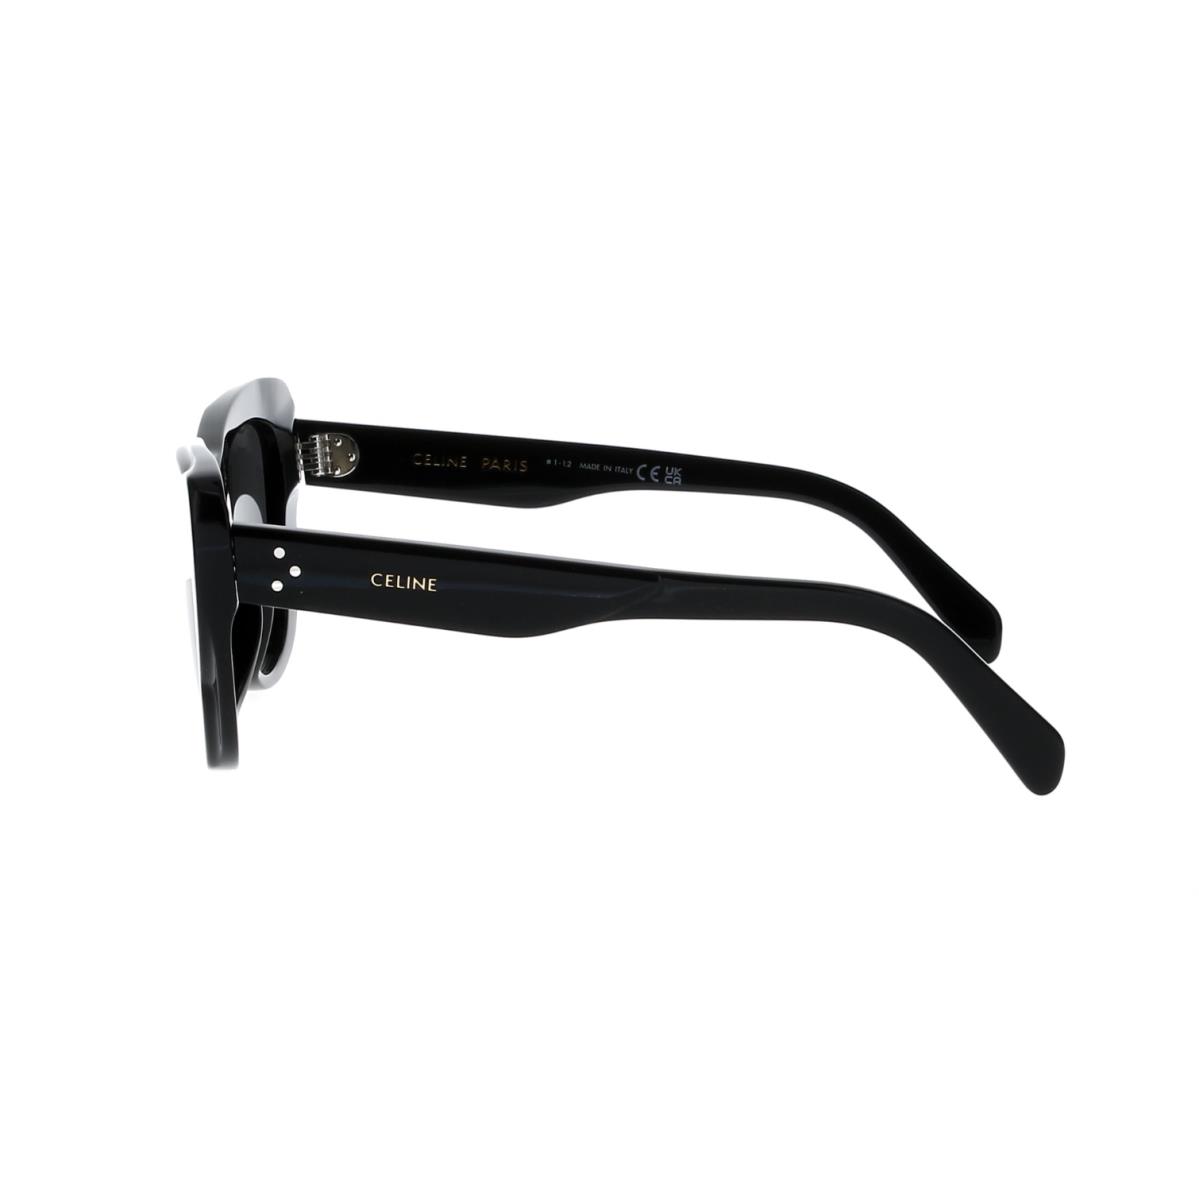 Celine sunglasses  - Black Frame, Gray Lens